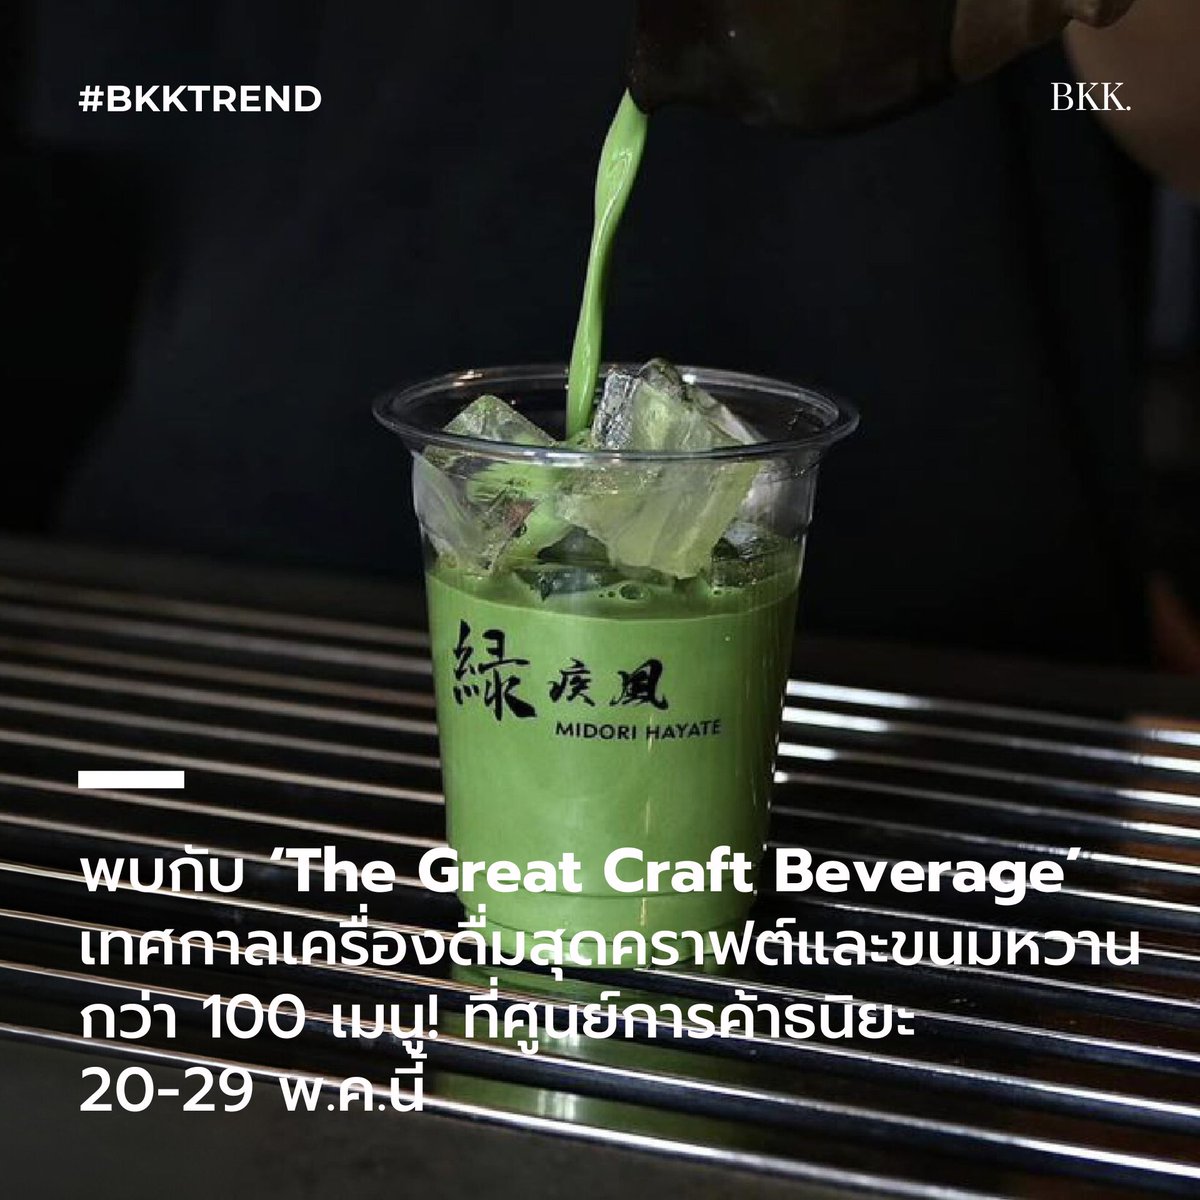 สายอีสสสสสแวะมาทางนี้ 20-29 พ.ค.นี้ เตรียมพบกับ ‘The Great Craft Beverage’ เทศกาลเครื่องดื่มสุดคราฟต์และขนมหวานกว่า 100 เมนู ที่ศูนย์การค้าธนิยะ  ย่านสีลม!

#BKKMENU #BKKTREND #TheGreatCraftBeverage